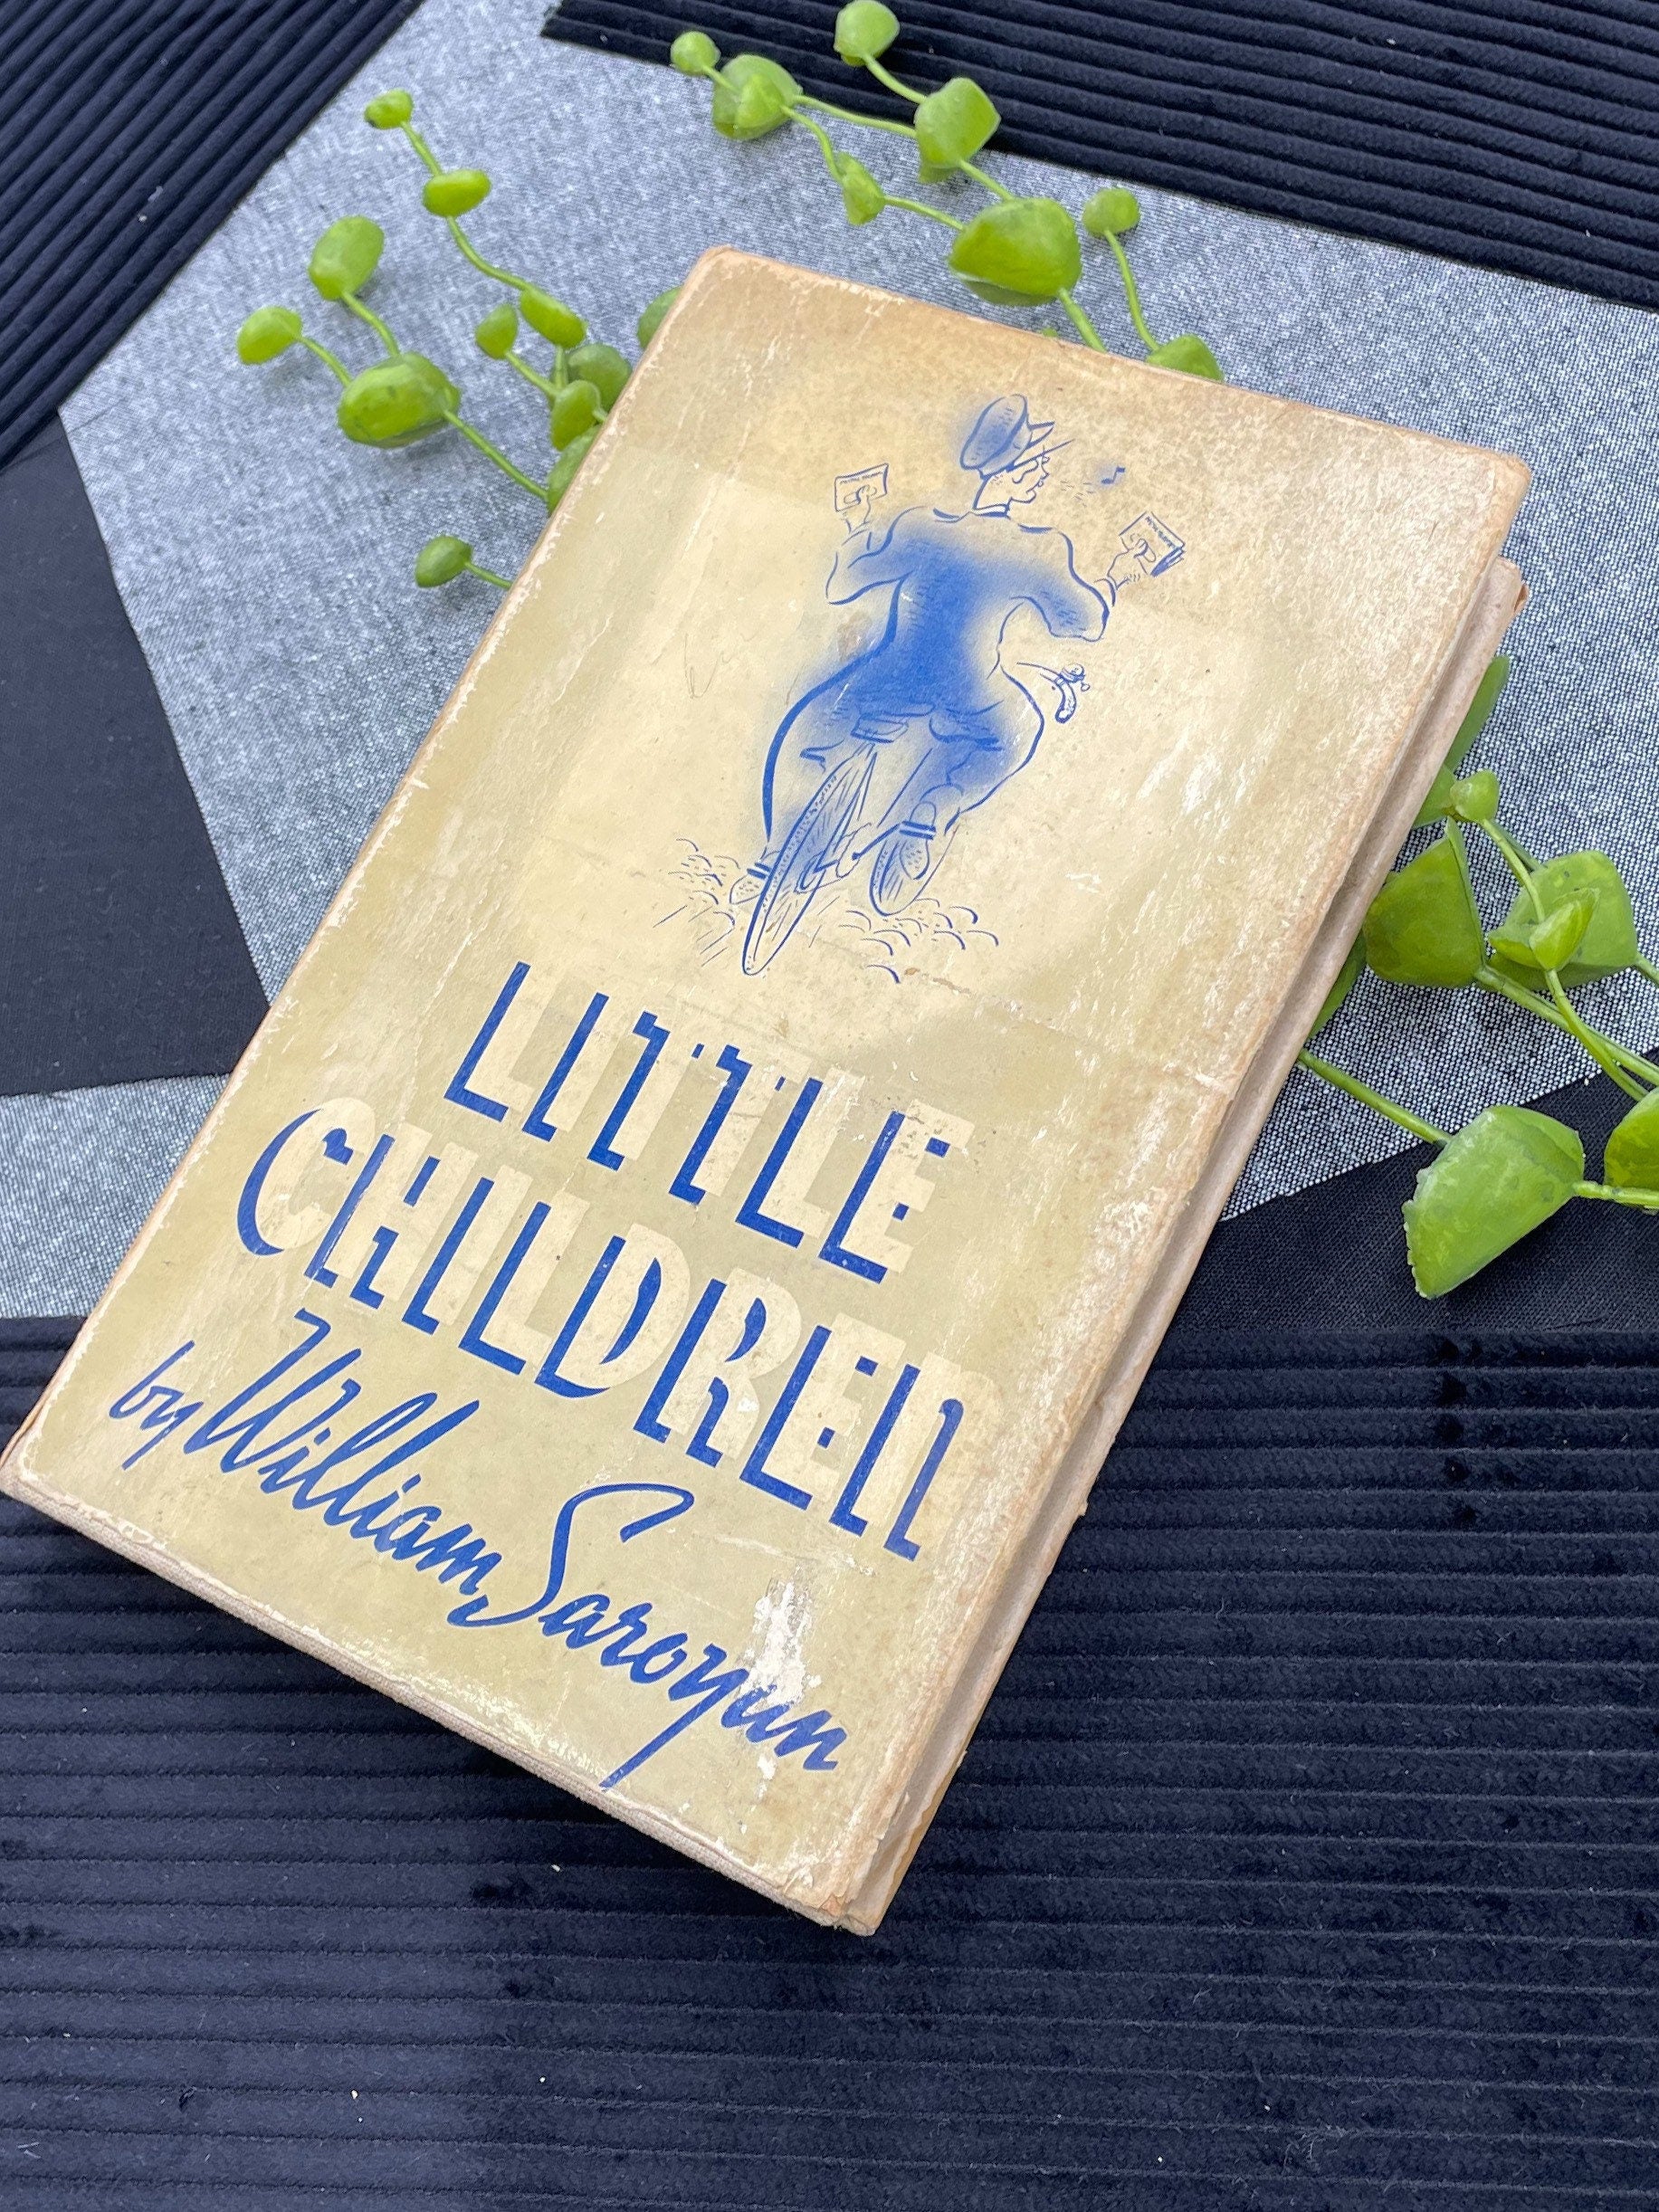 Rare Books, Little Children by William Saroyan